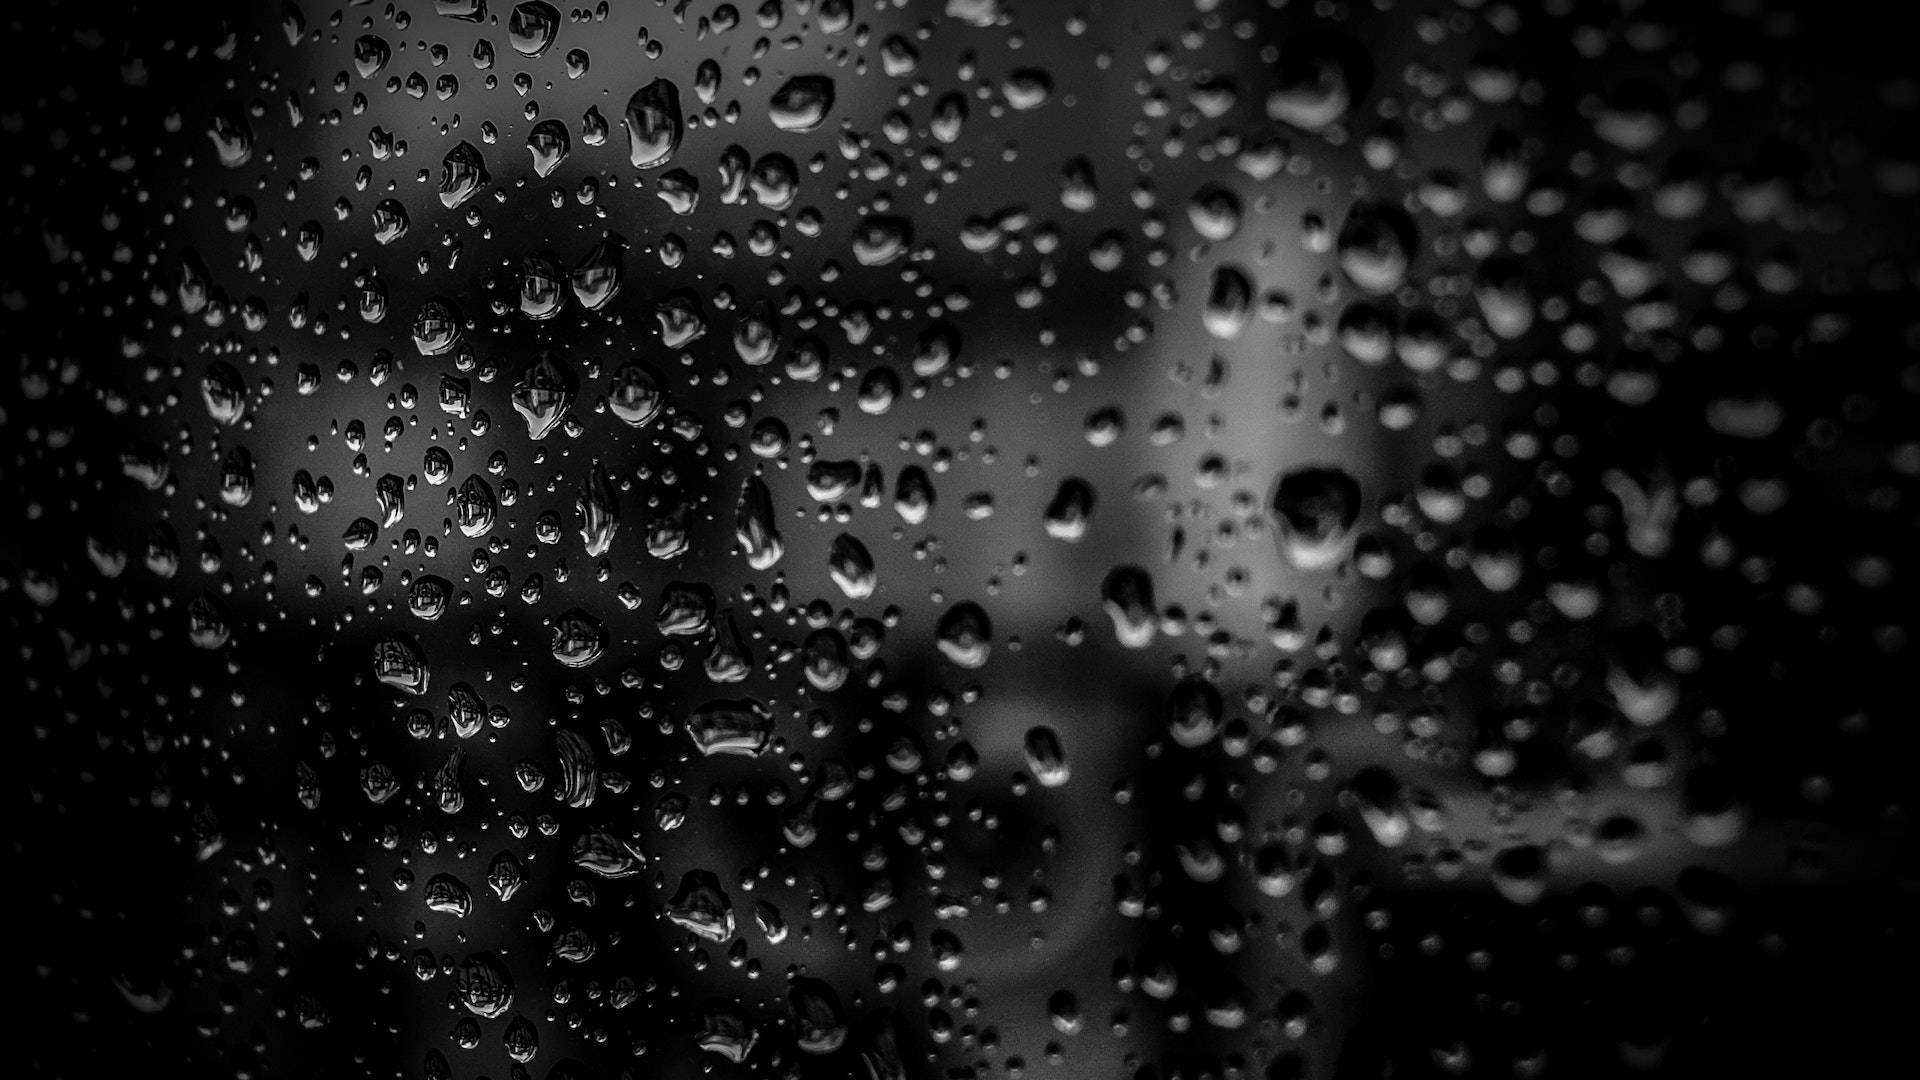 Sort Desktop Rain Droplets Wallpaper